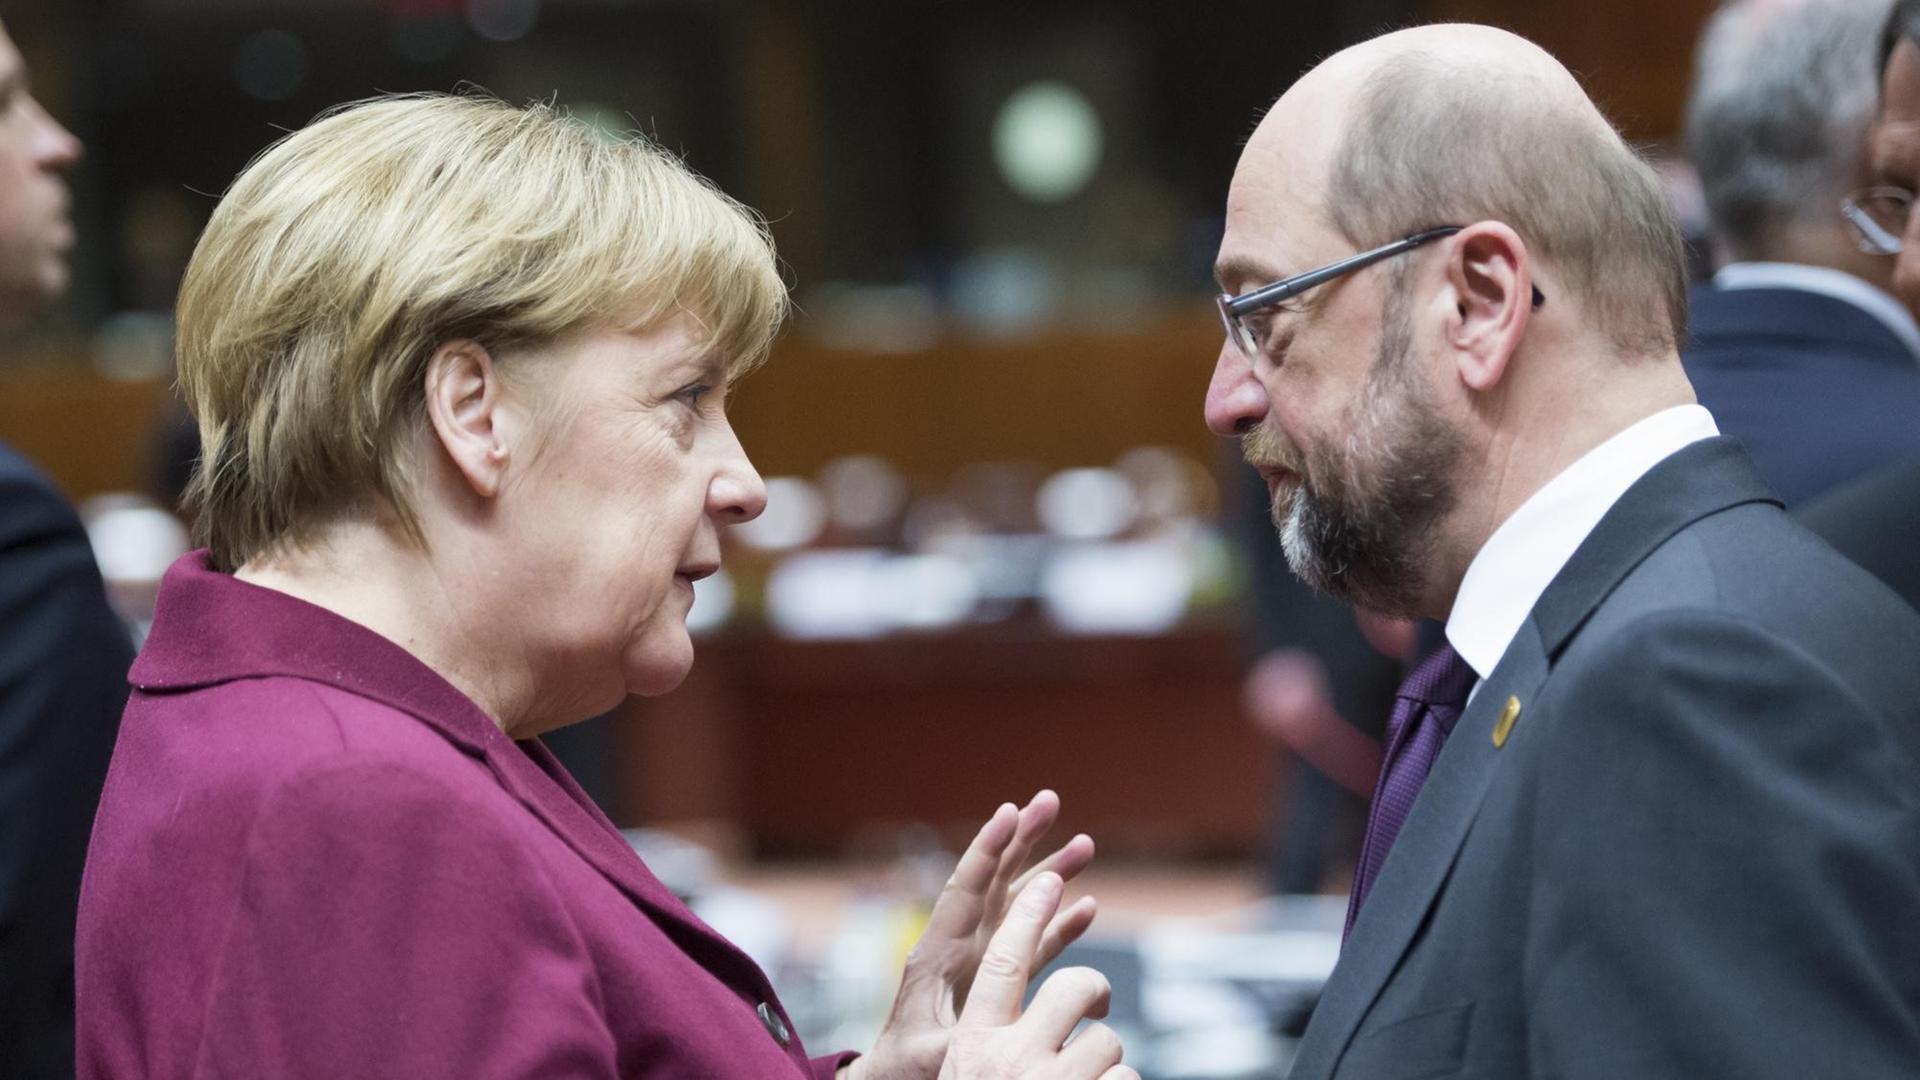 Bundeskanzlerin Angela Merkel und Martin Schulz im Gespräch in Brüssel